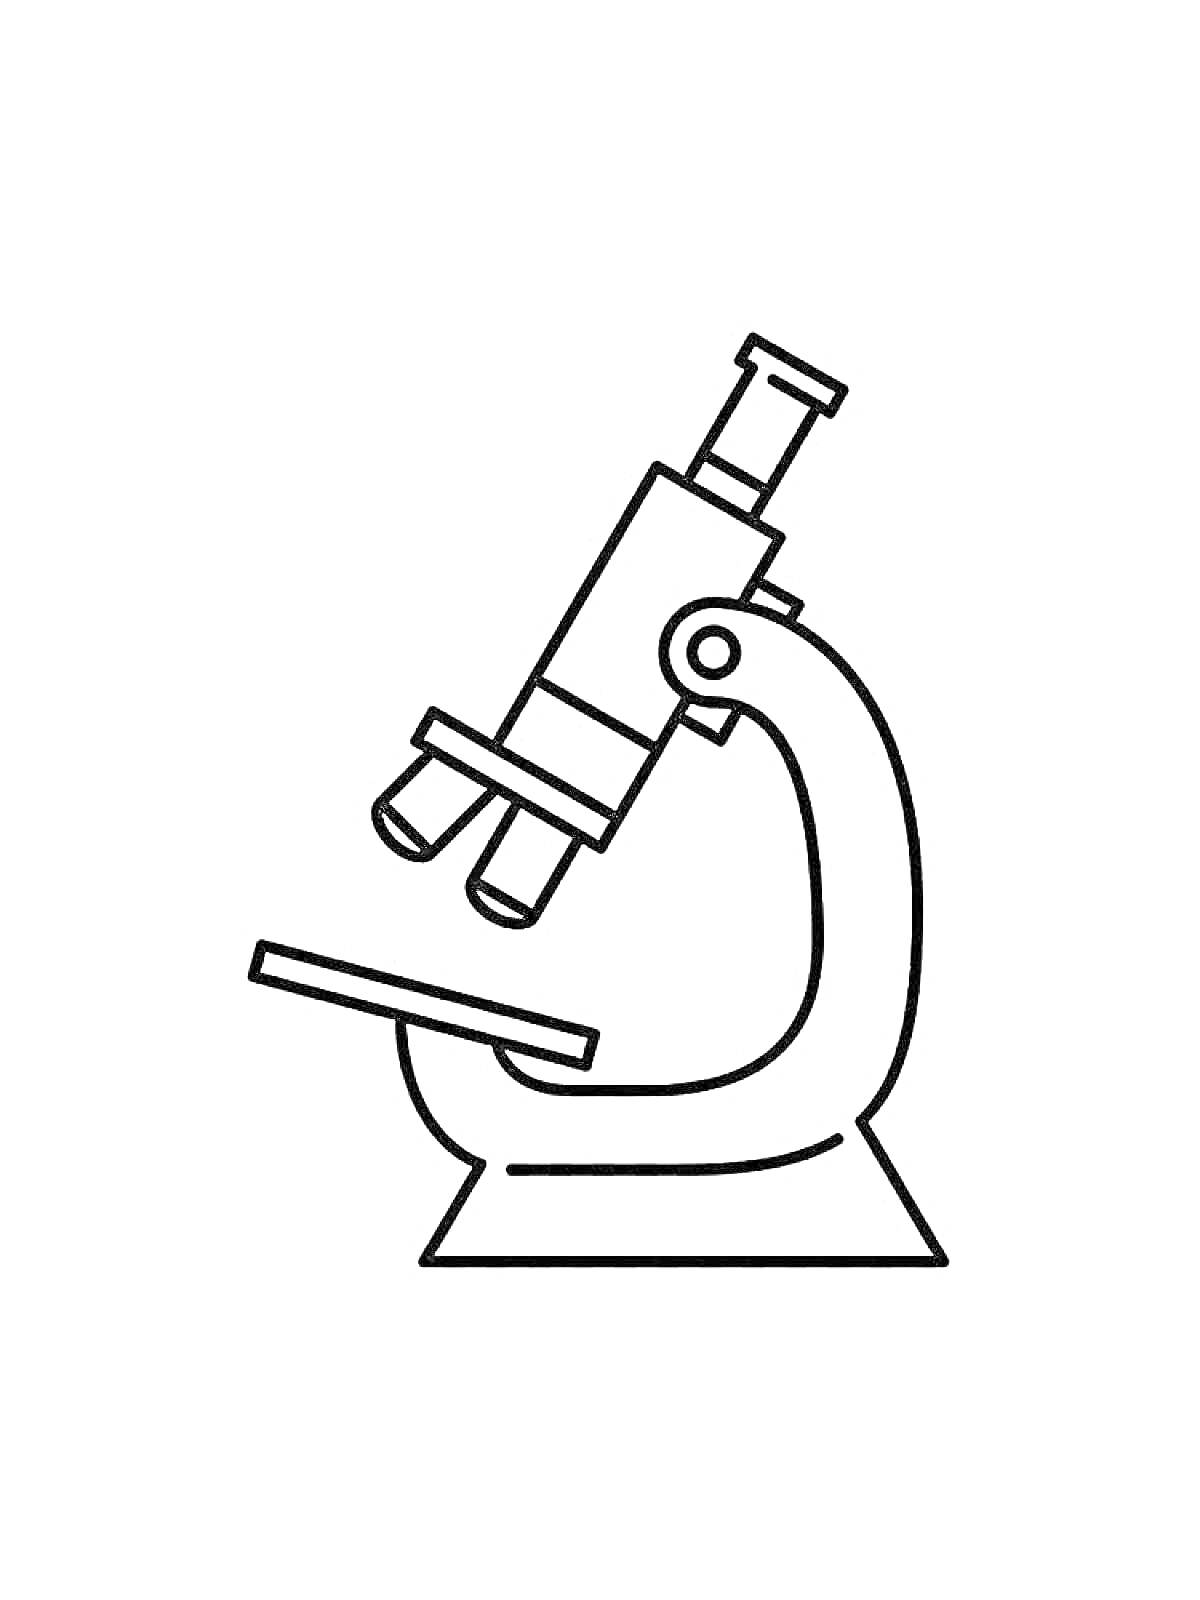 Раскраска Микроскоп с окуляром, объективами, штативом и предметным столиком